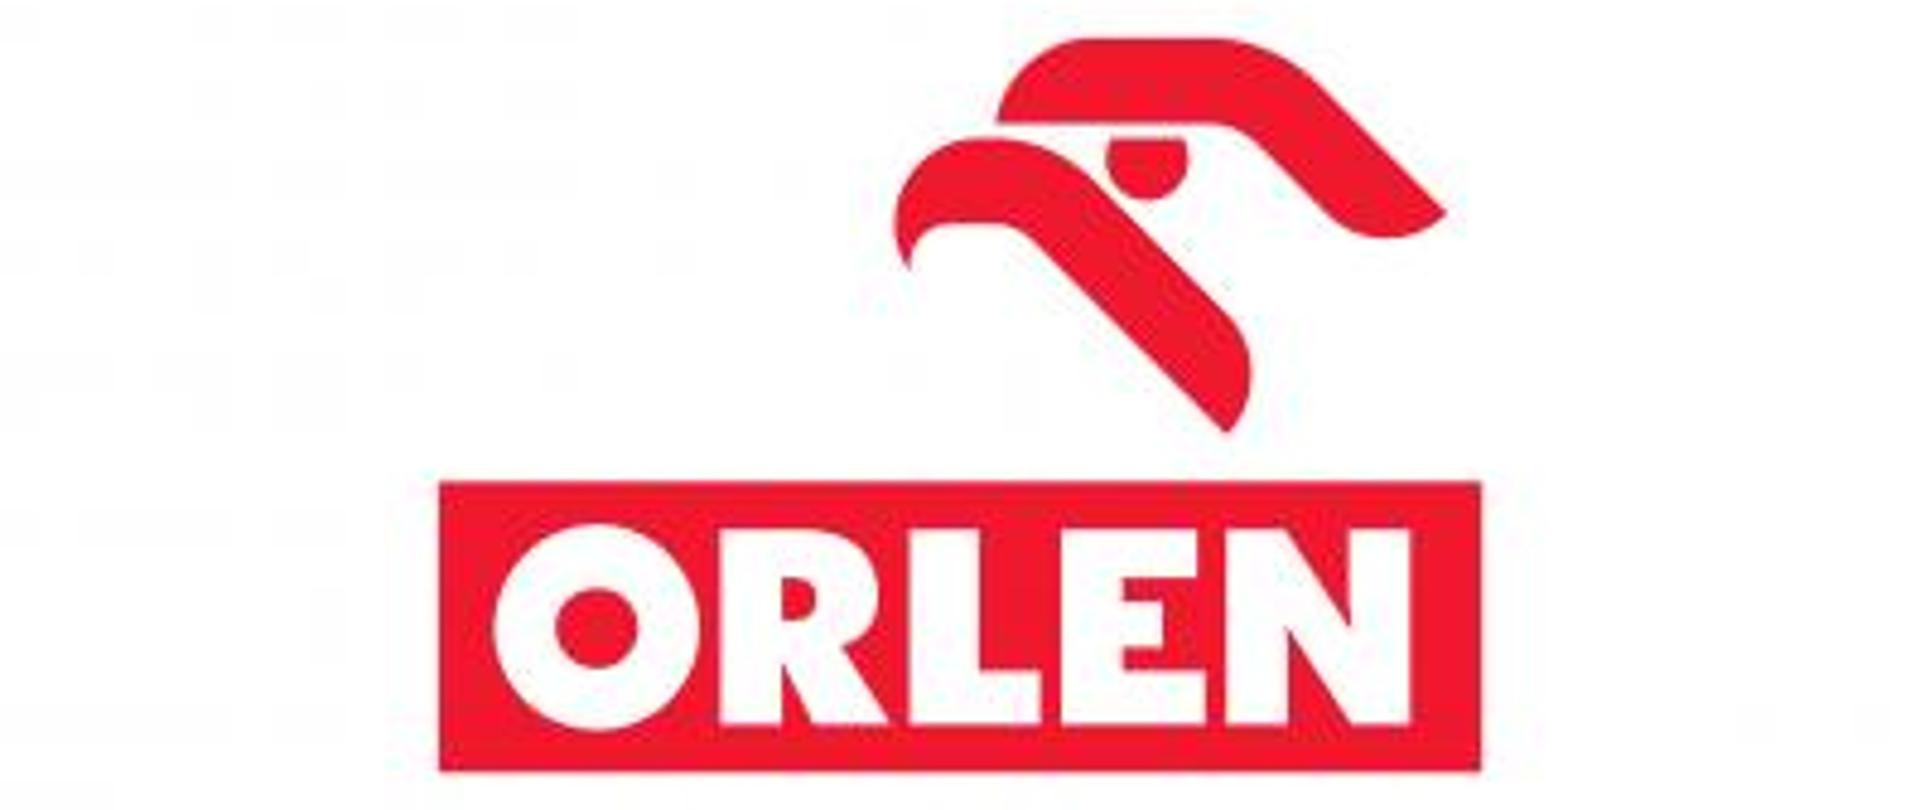 Zdjęcie przedstawia logo fundacji Orlen.